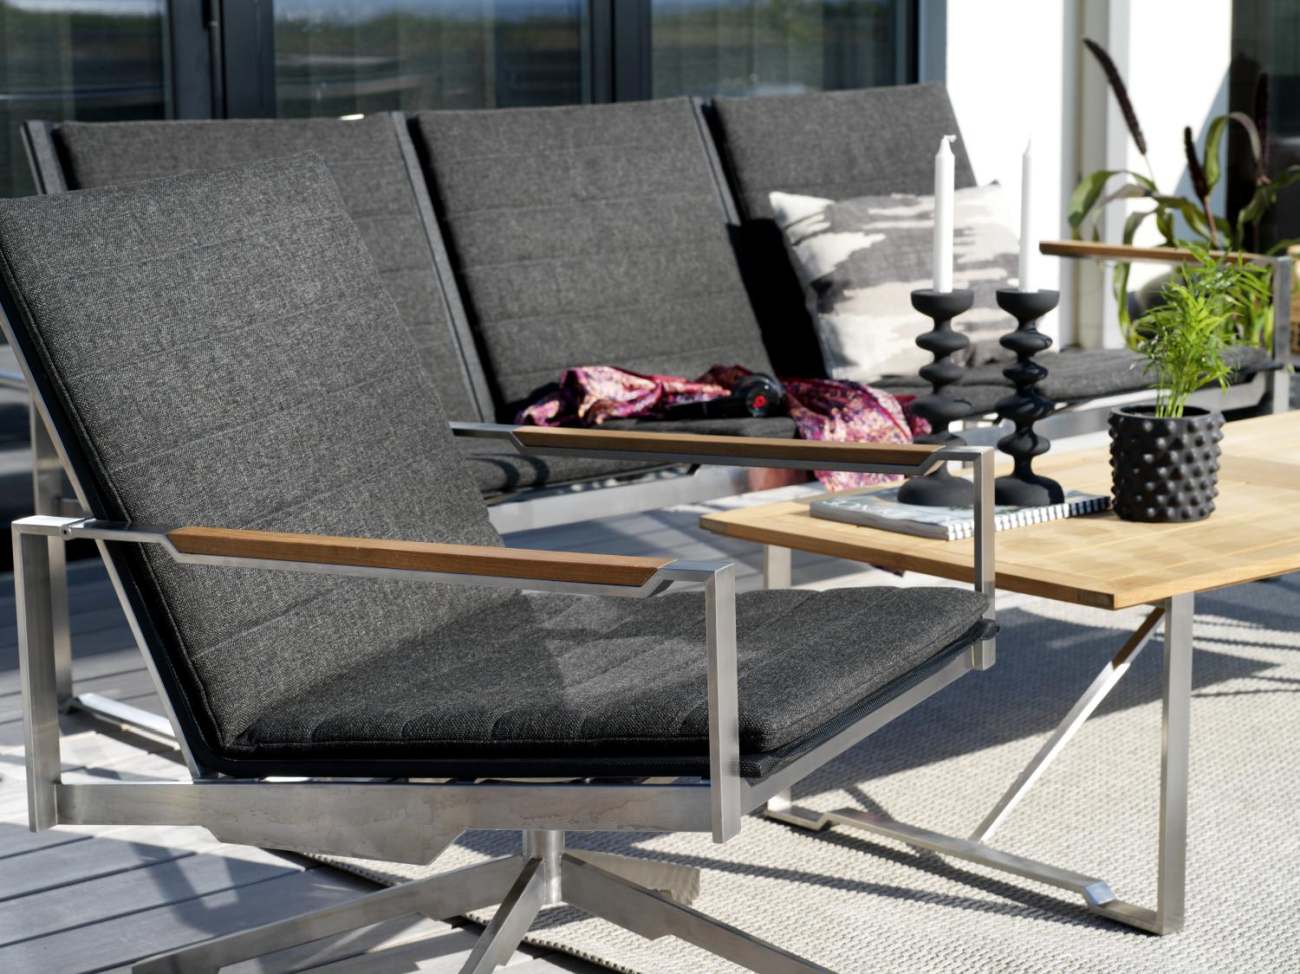 Der Gartencouchtisch Gotland überzeugt mit seinem modernen Design. Gefertigt wurde die Tischplatte aus Akazienhholz und besitzt einen natürlichen Farbton. Das Gestell ist auch aus Metall und hat eine silberne Farbe. Der Tisch besitzt eine Länger von 150 c